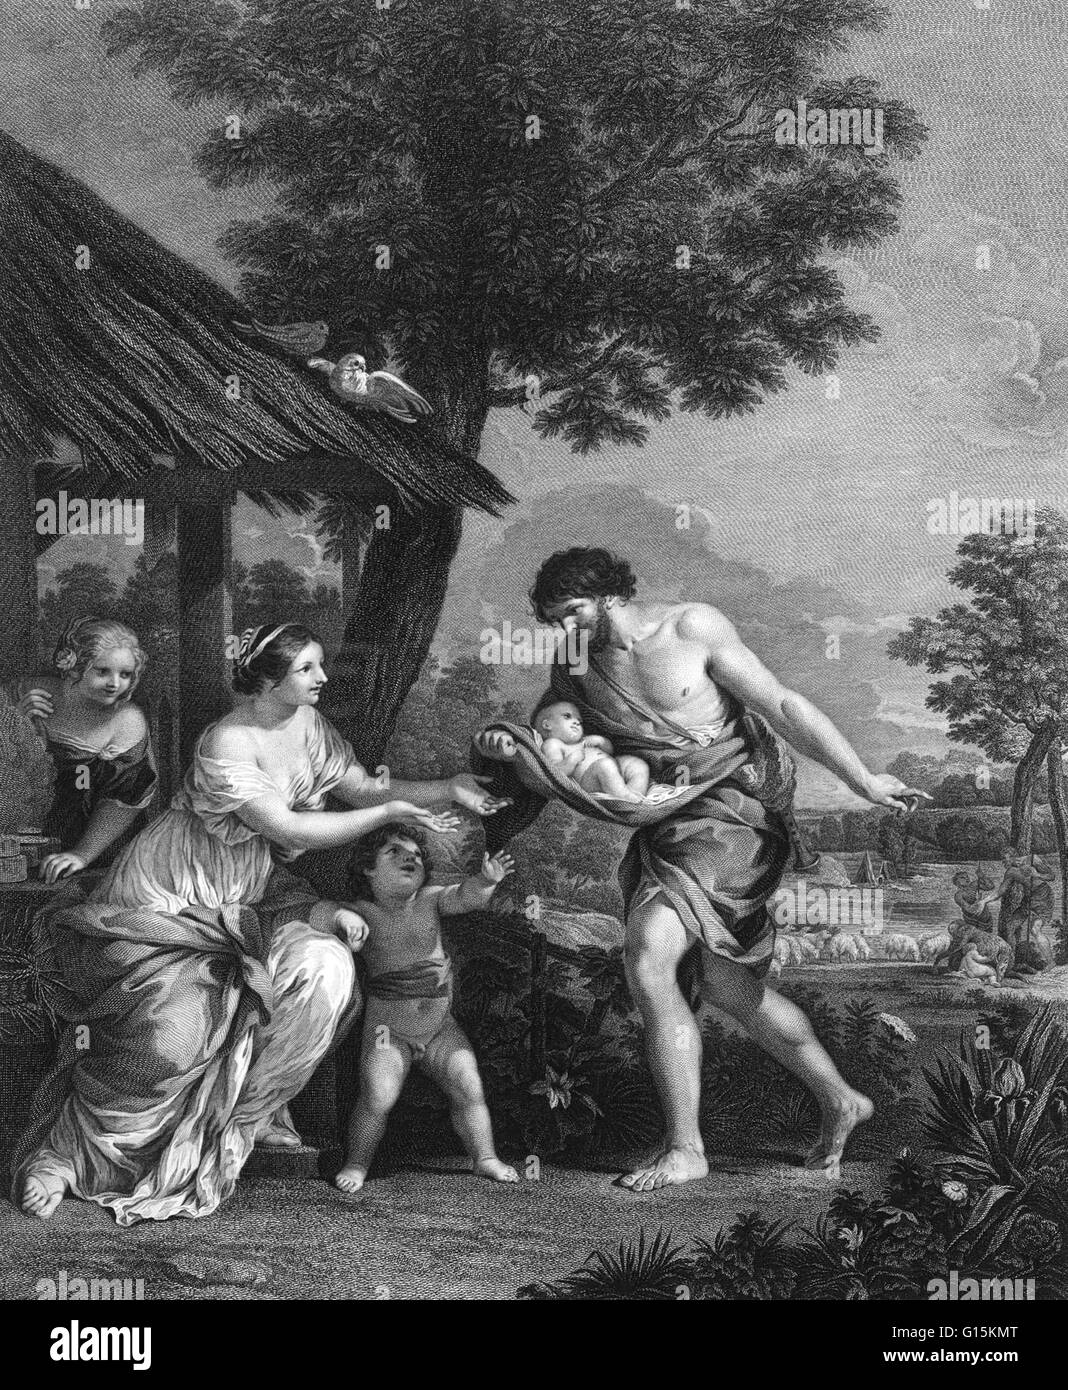 Secondo la mitologia romana, i fondatori di Roma erano Romolo e Remo. La storia inizia con la deposizione di Numitor (il loro nonno e re di Alba Longa), da suo fratello Amulio. Il twin-fratelli erano figli del dio Marte e il giubbotto Foto Stock